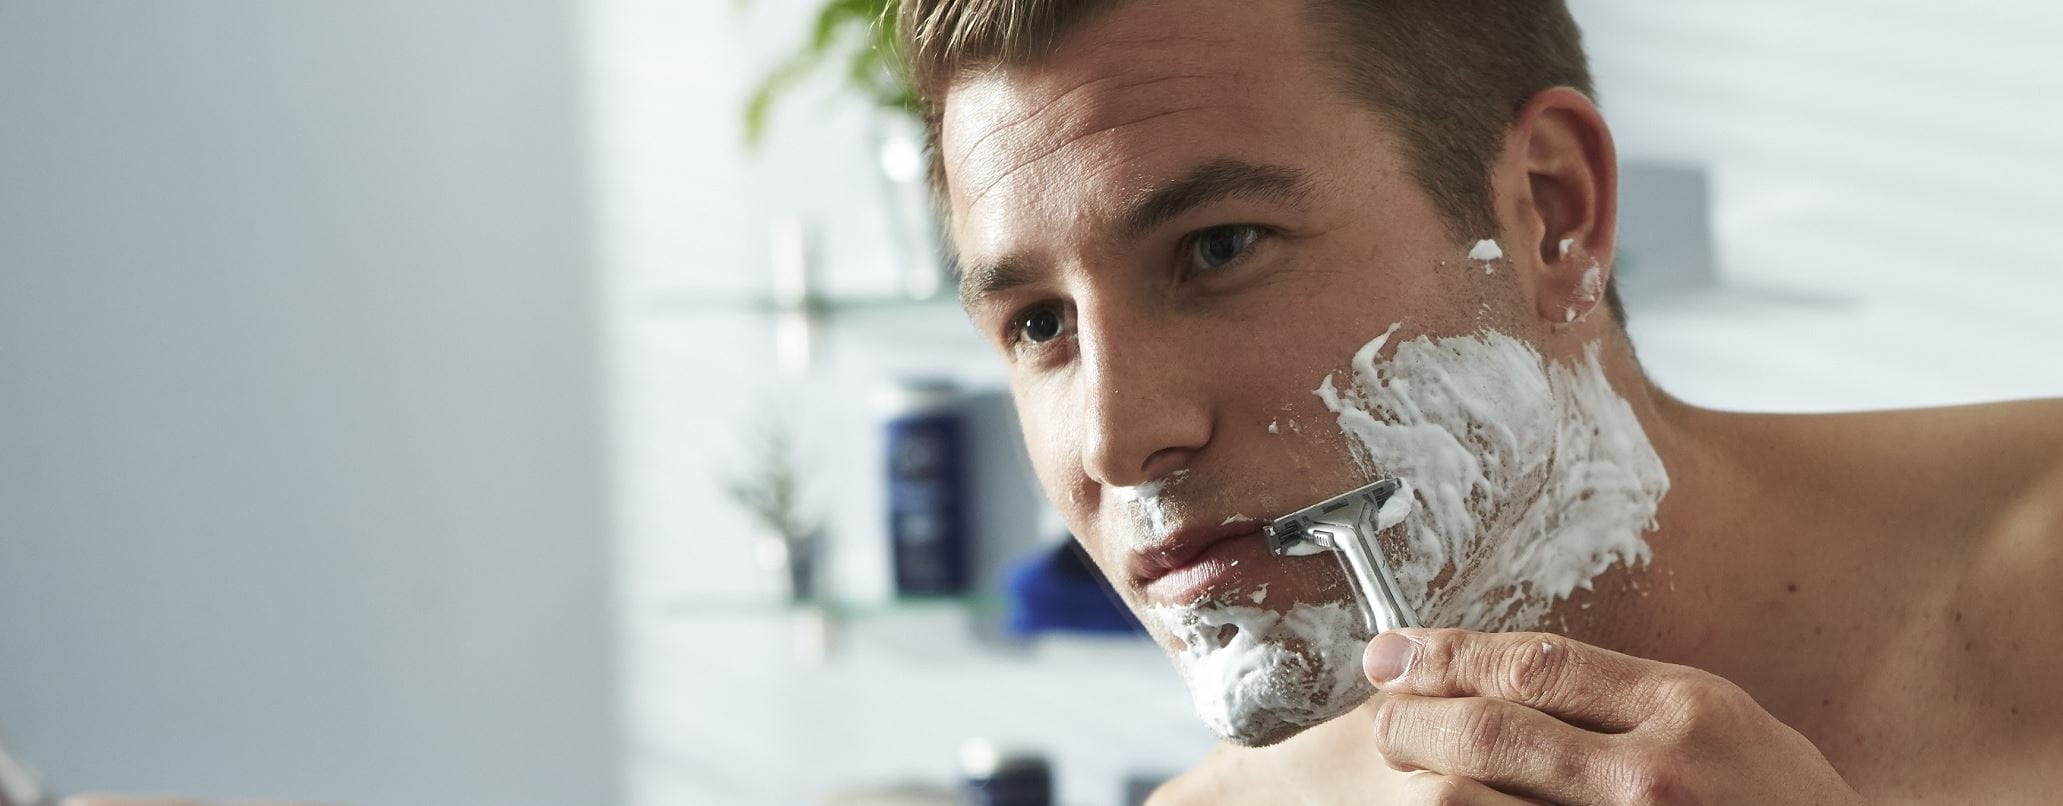 Shaving solutions